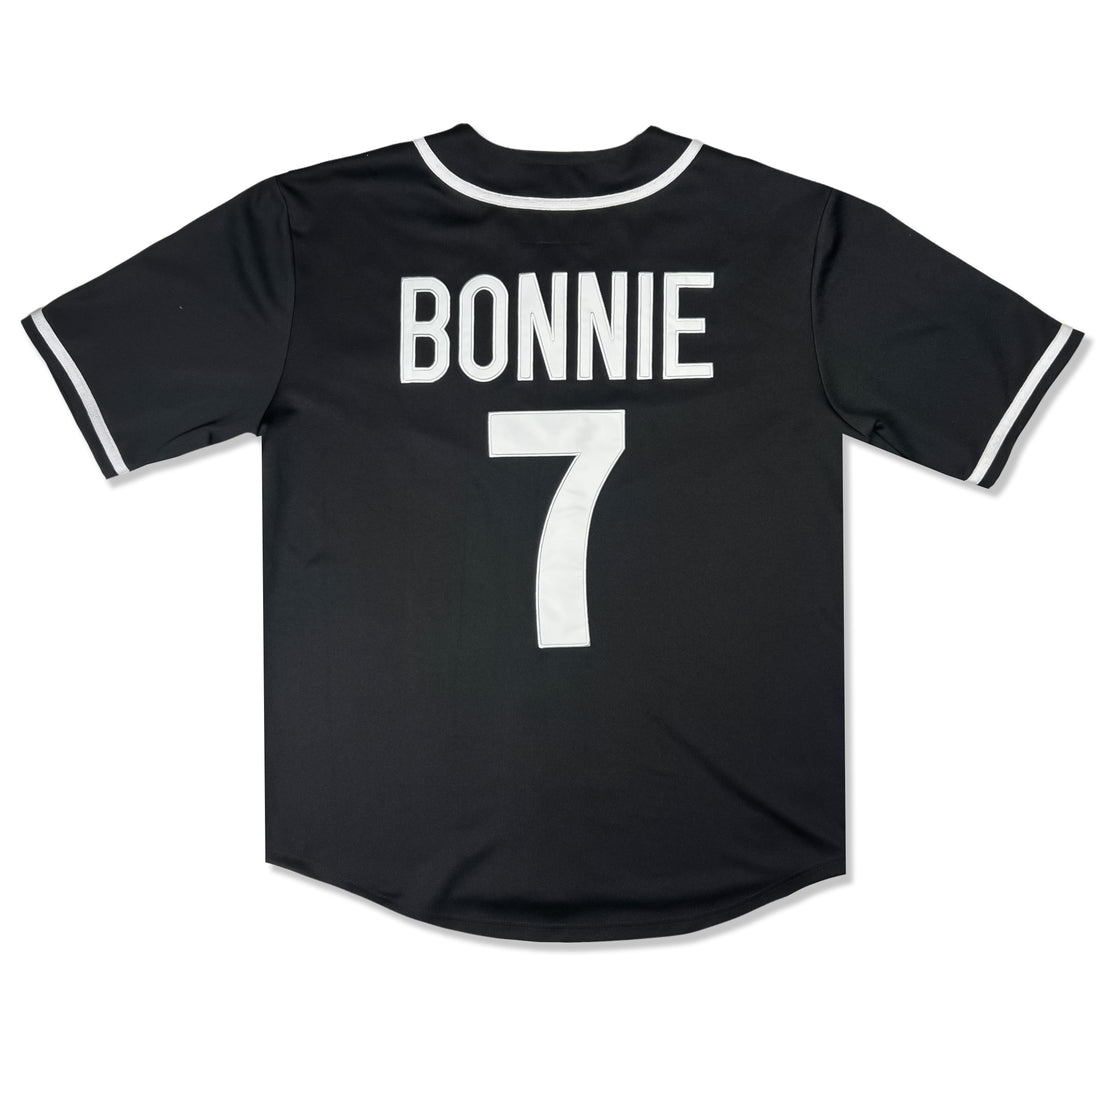 BONNIE X CLYDE - BONNIE - BASEBALL JERSEY